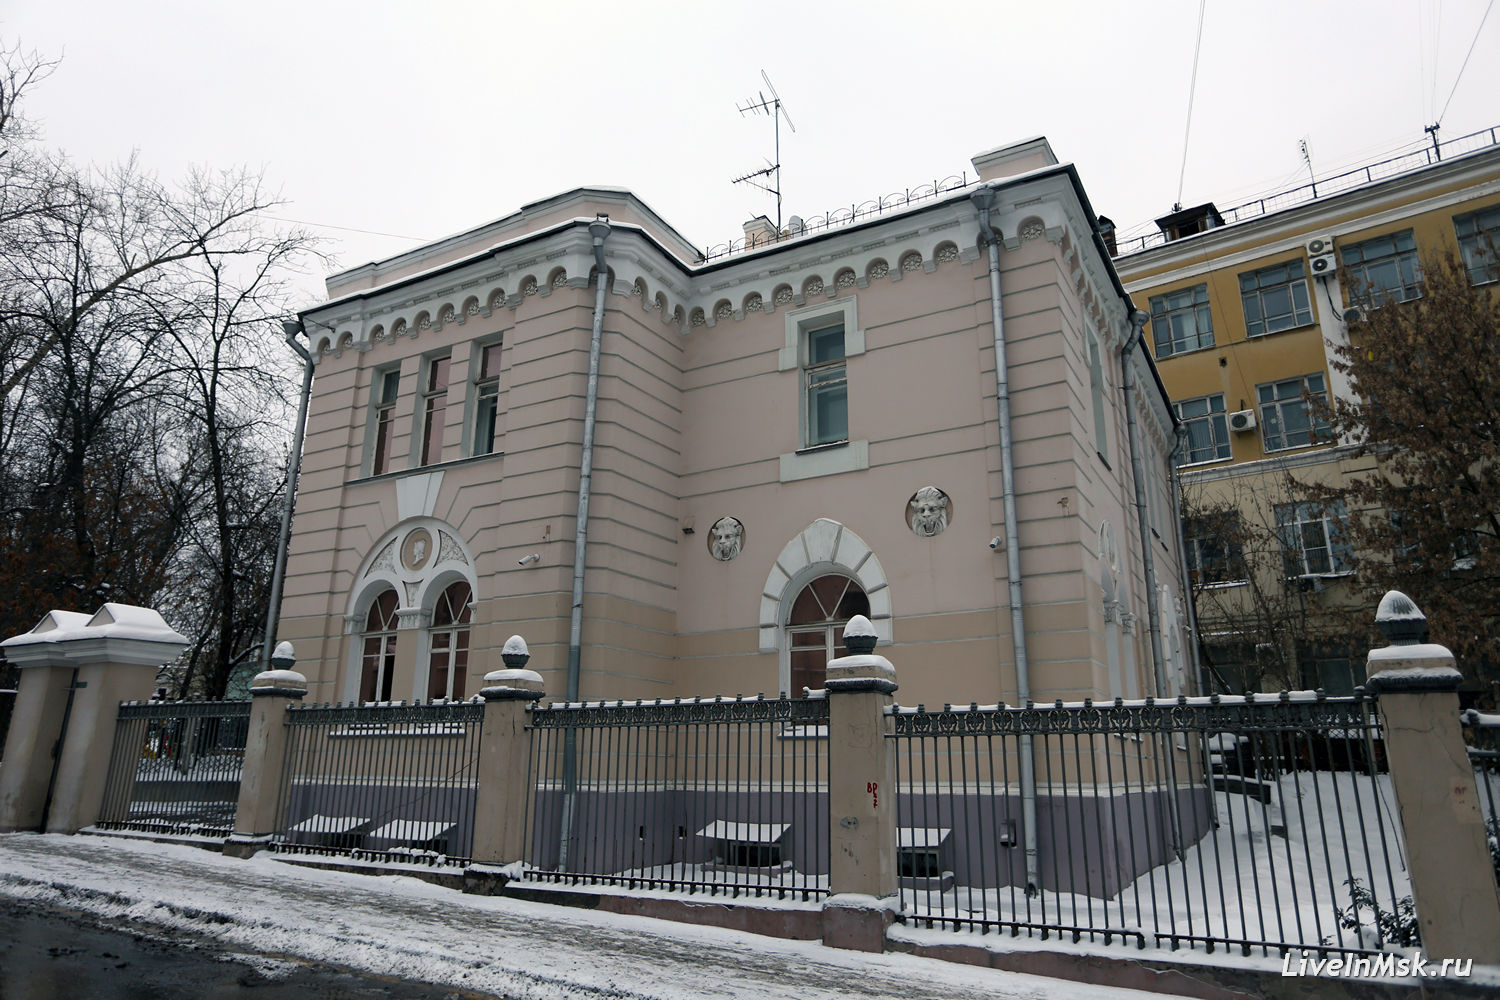 Дом К.В. Снегирева, фото 2014 года